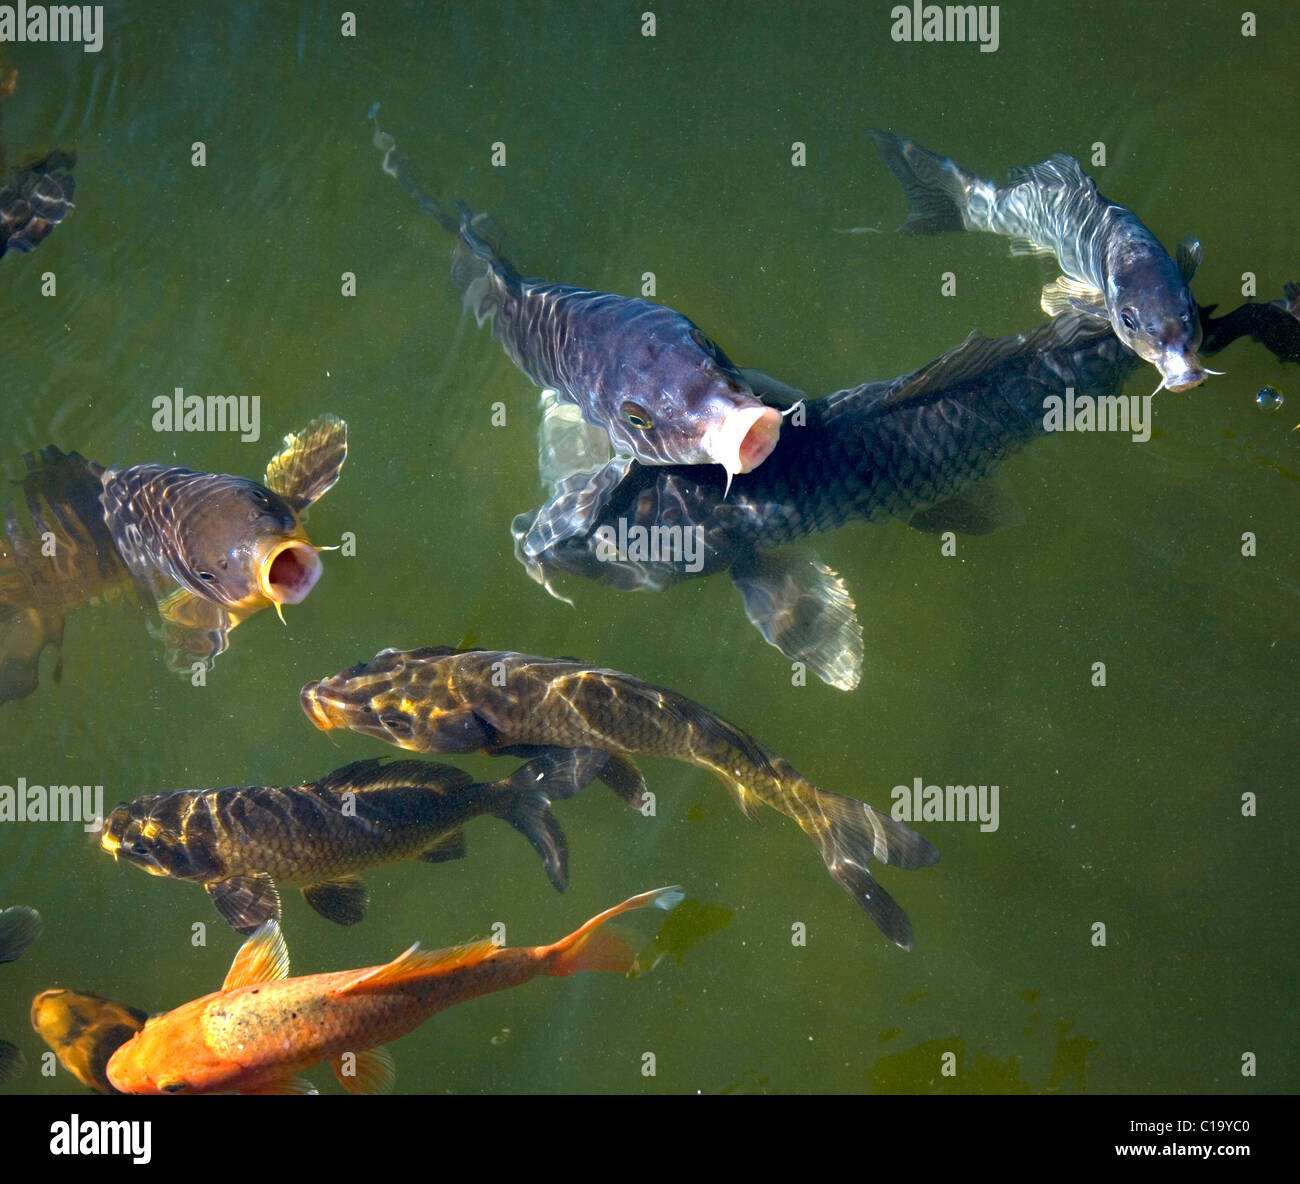 Koi de poissons dans un étang vert foncé Banque D'Images